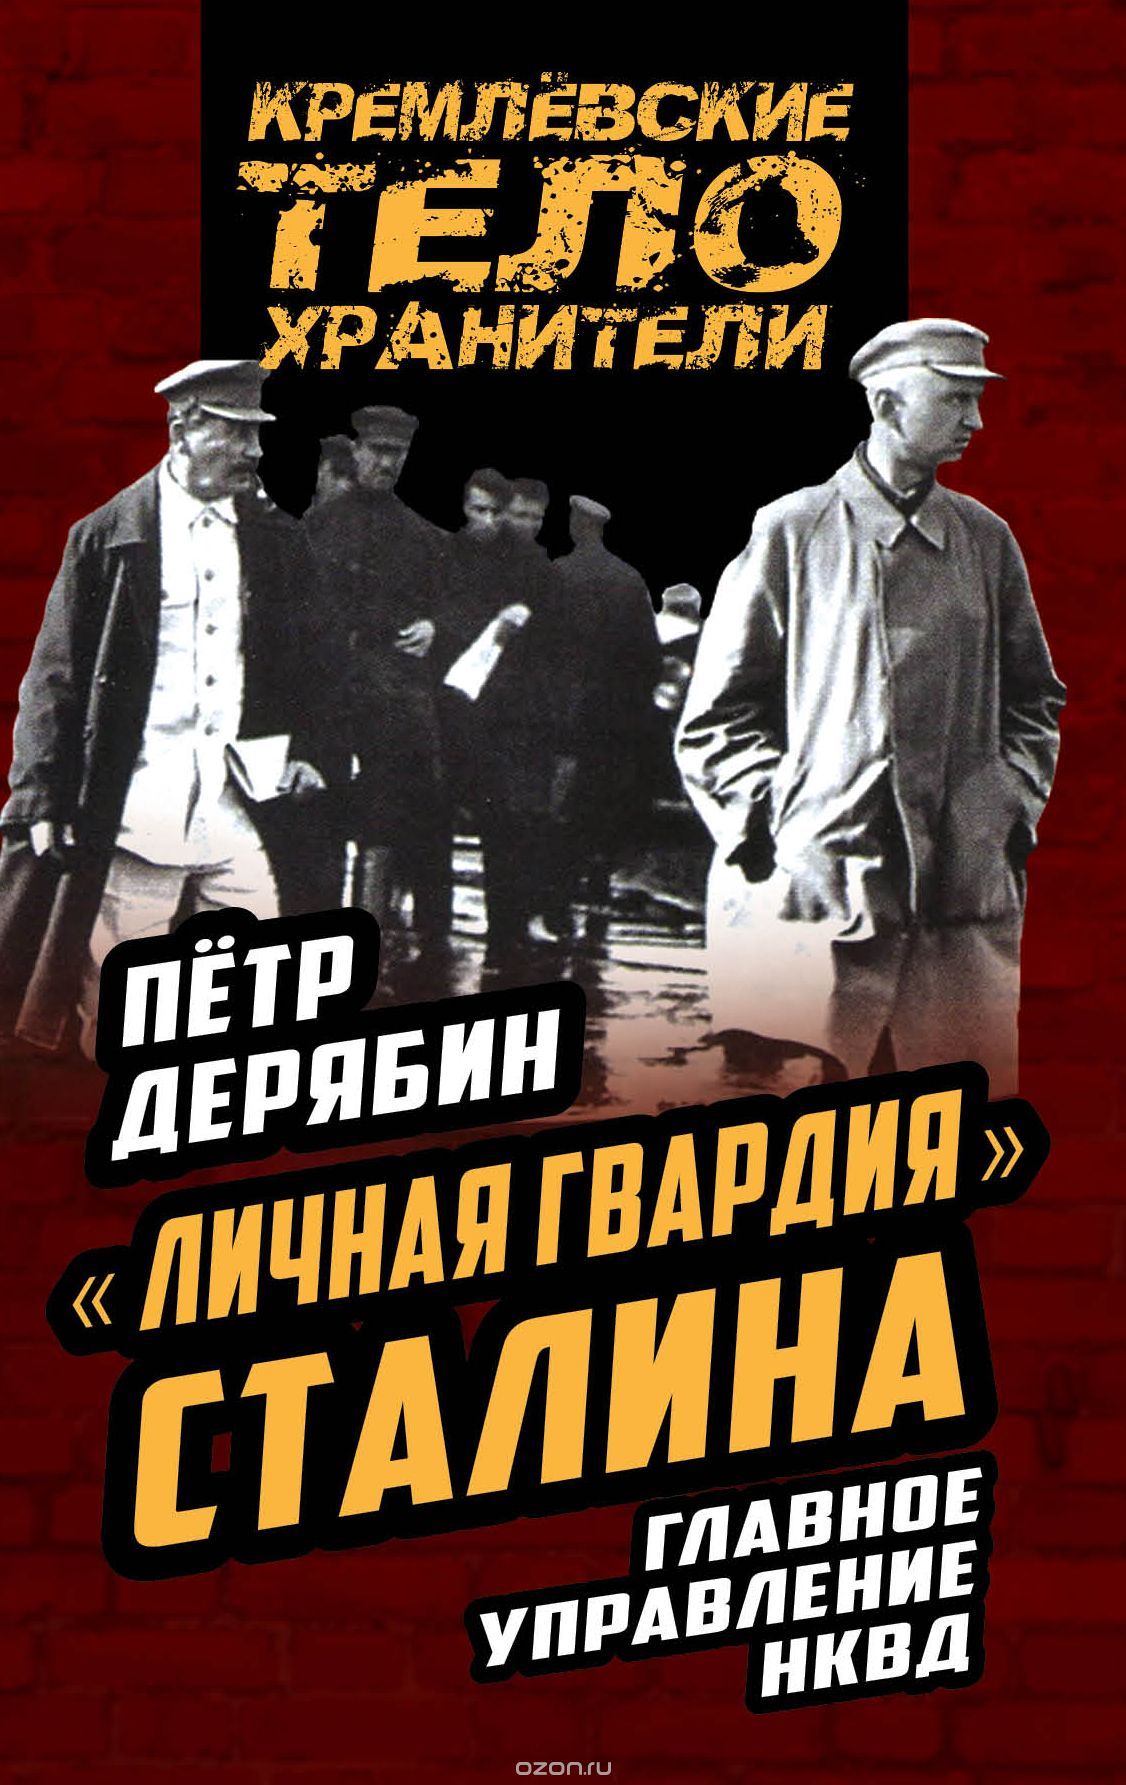 "Личная гвардия" Сталина. Главное управление НКВД, Петр Дерябин